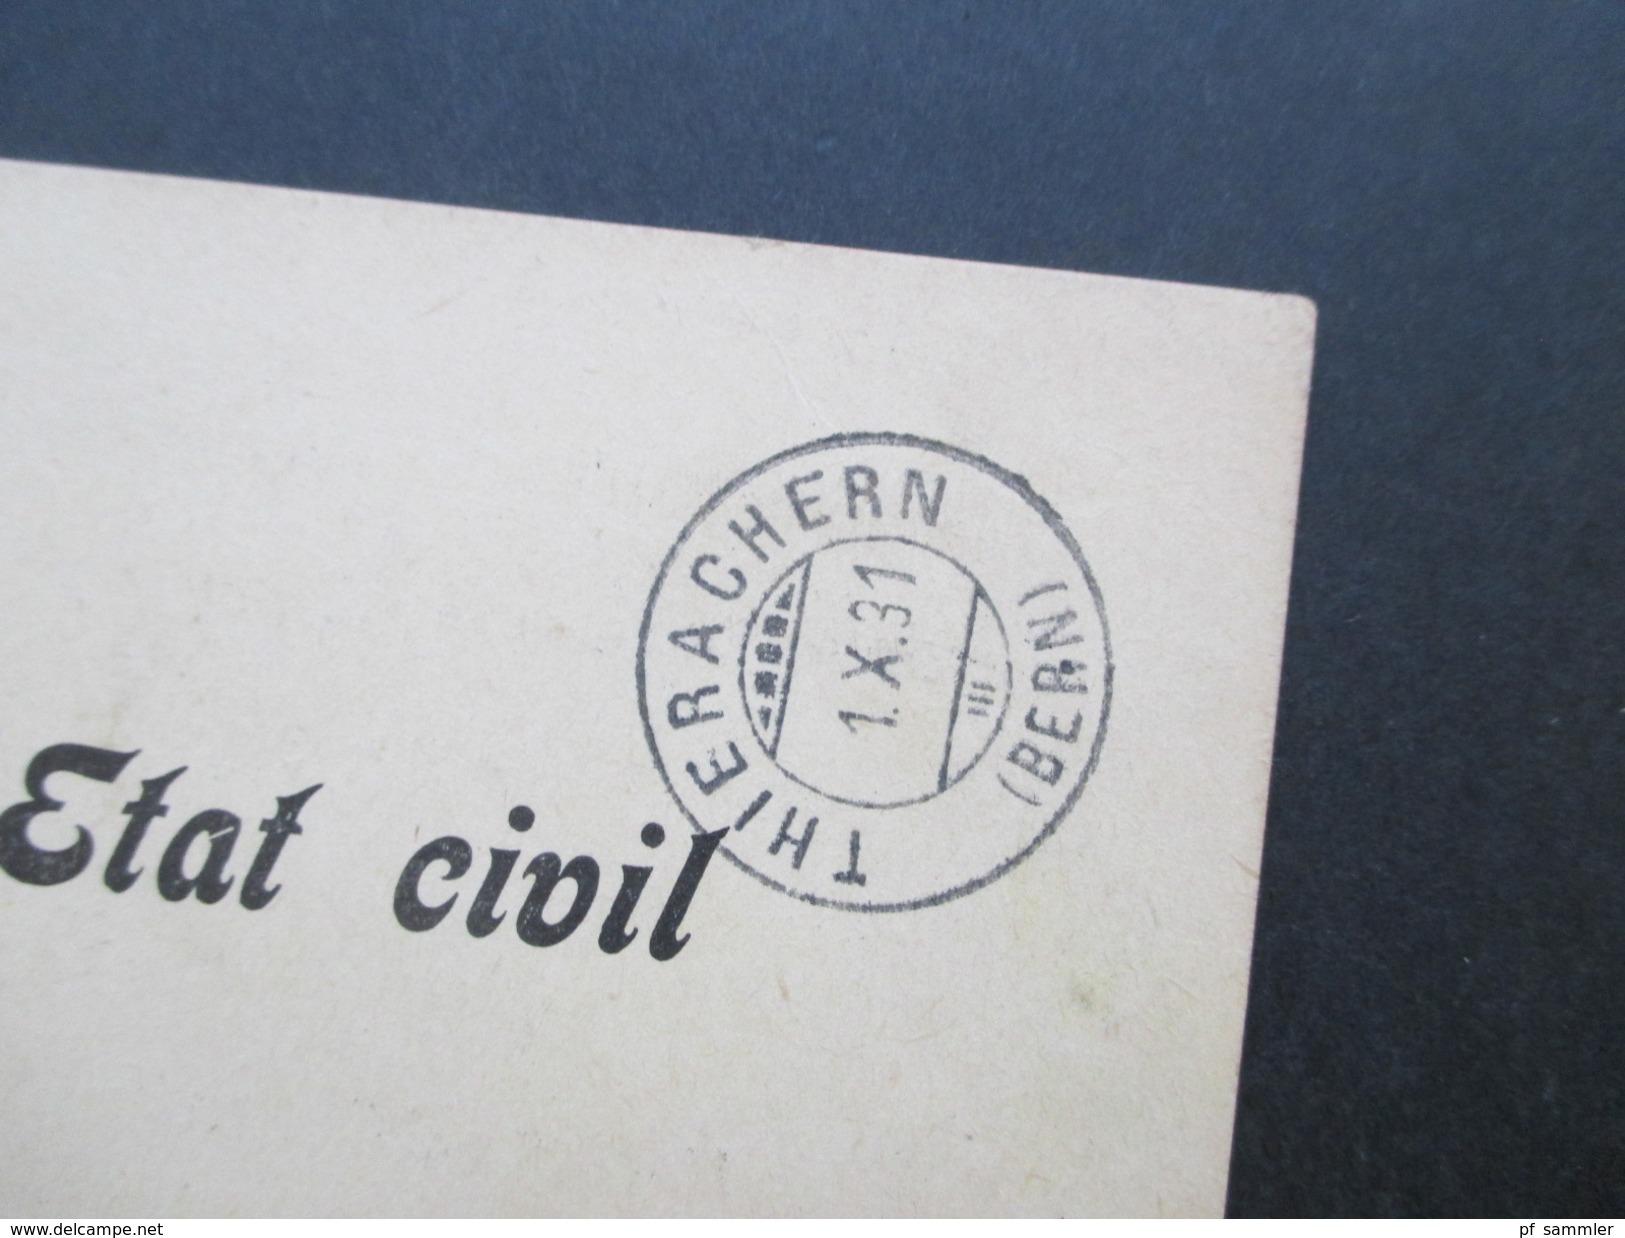 Schweiz 1916 / 39 Behördenpost / Officiel. Portofrei. insgesamt 9 Belege / Karten! Interessant?!?